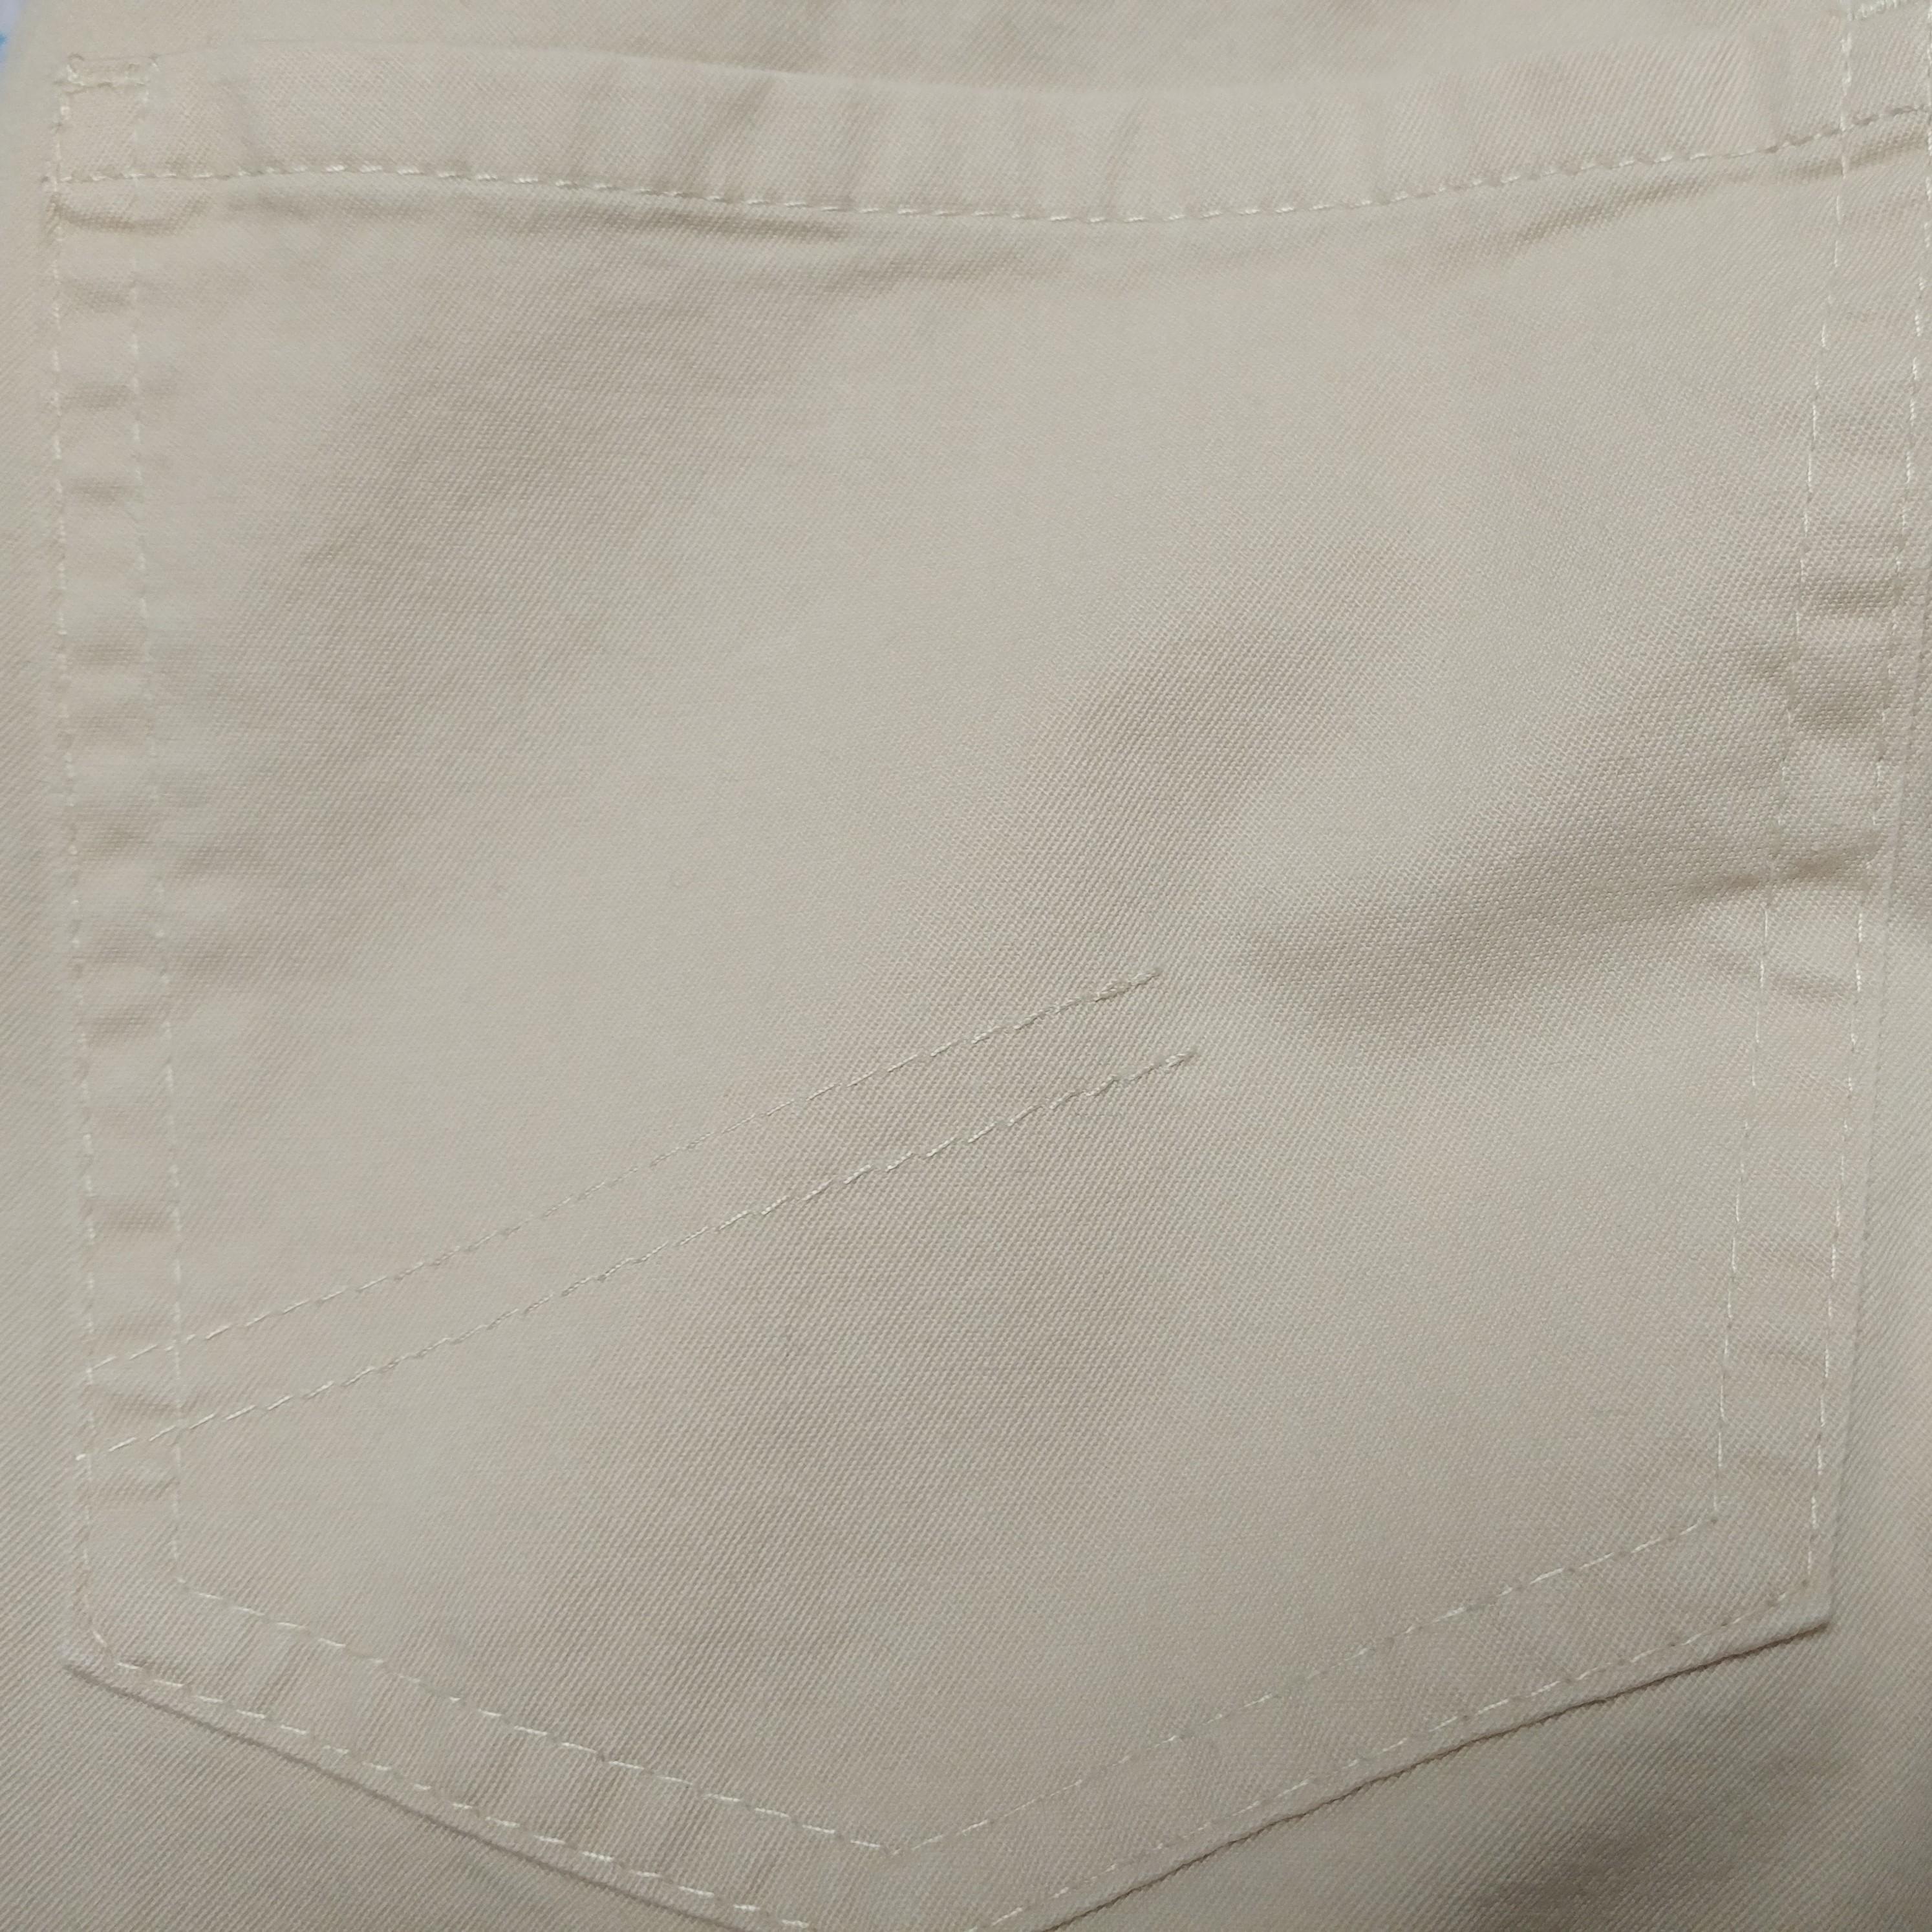 CHRISTIAN DIOR - Vintage Beige Cotton Capri 7/8 Pants | Size 6US 38EU For Sale 4